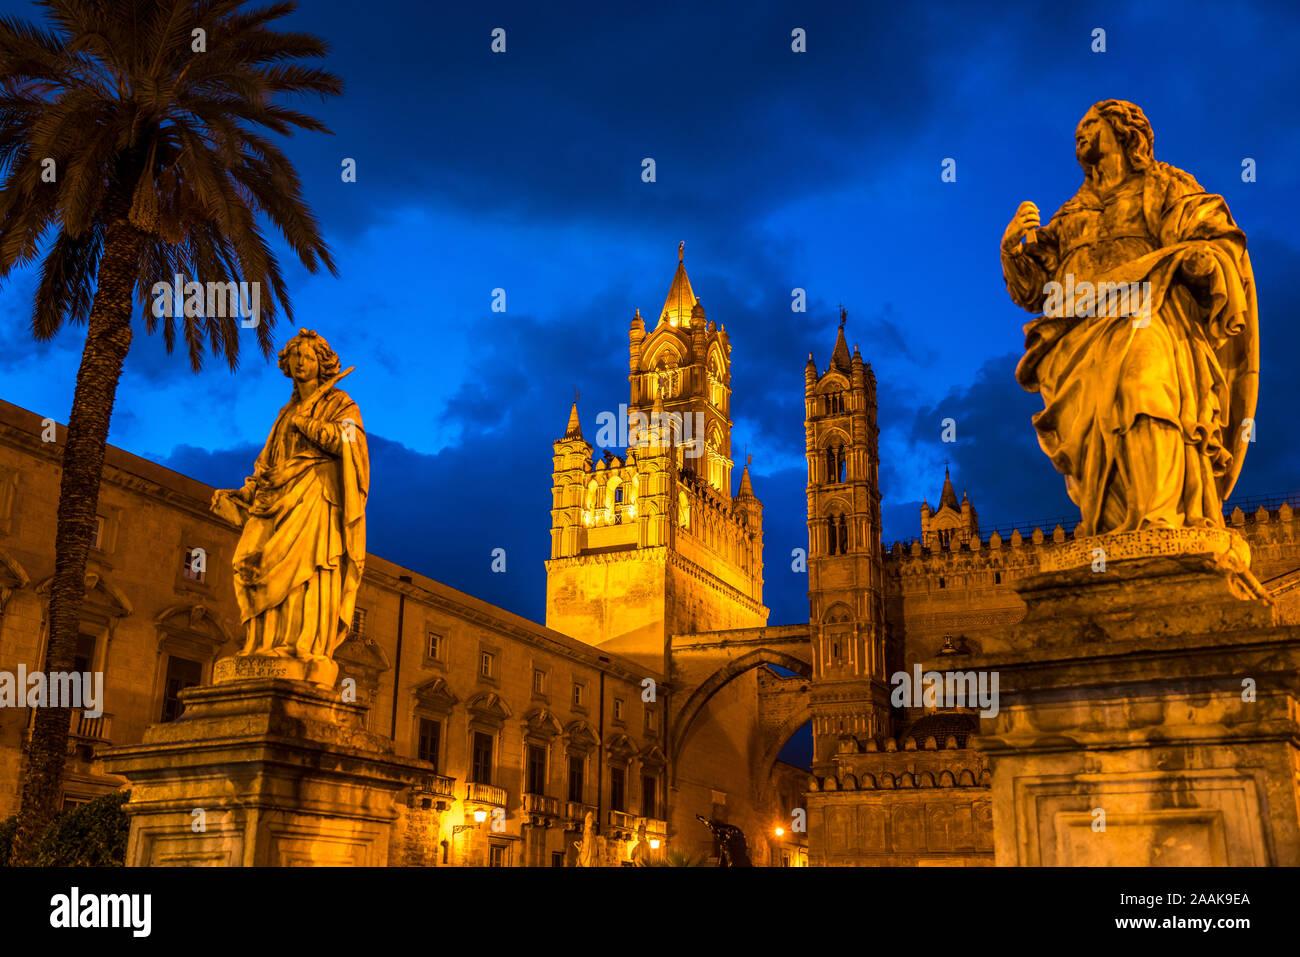 Statuen der Kathedrale Maria Santissima Assunta in der Abenddämmerung, Palermo, Sizilien, Italien, Europa | Statuen vor der Kathedrale Stockfoto